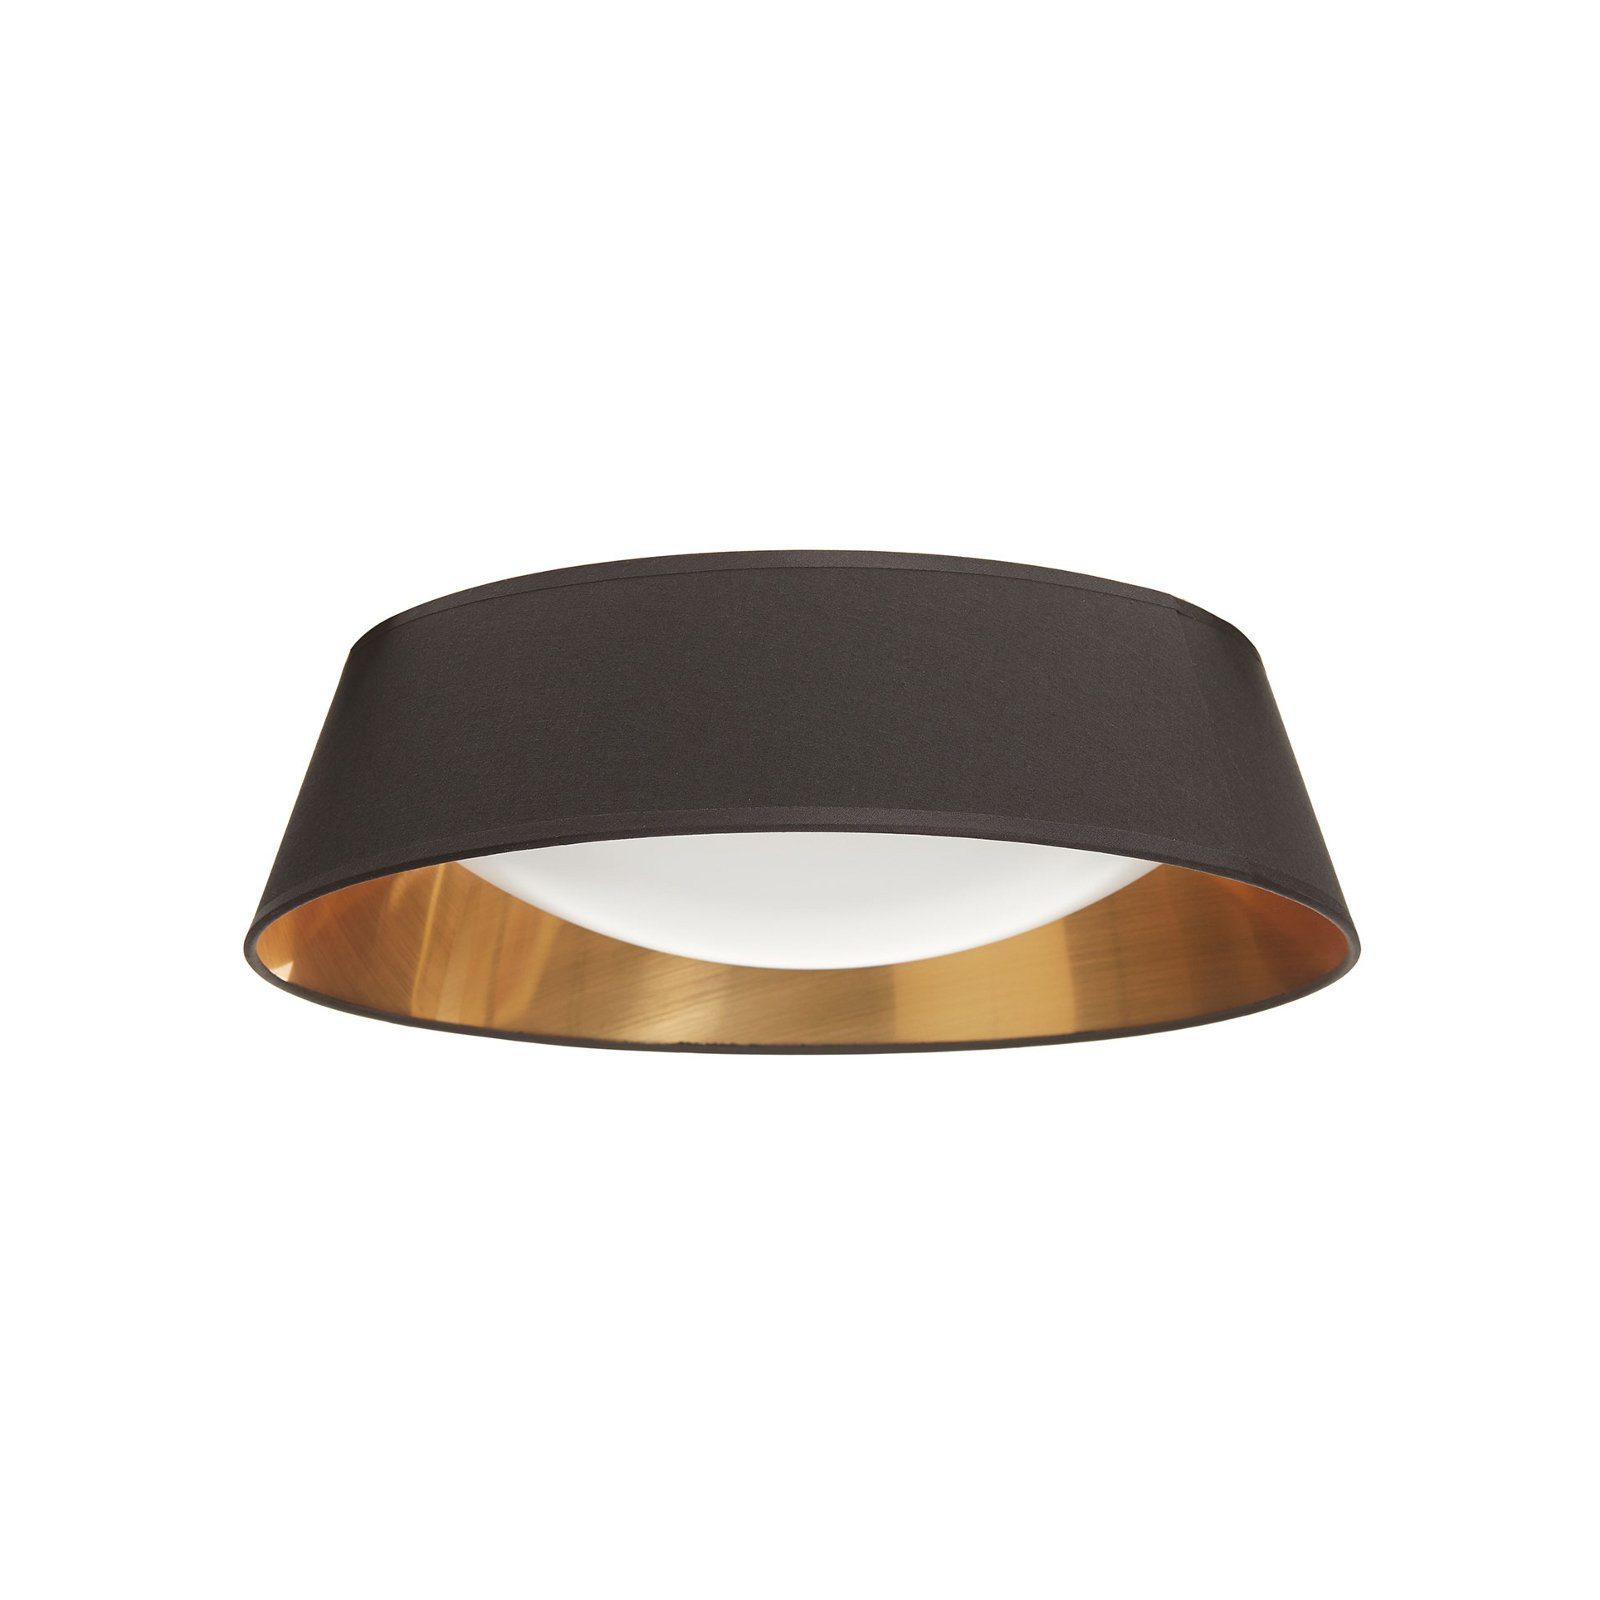 Čierno-zlaté okrúhle stropné LED svietidlo Ponts